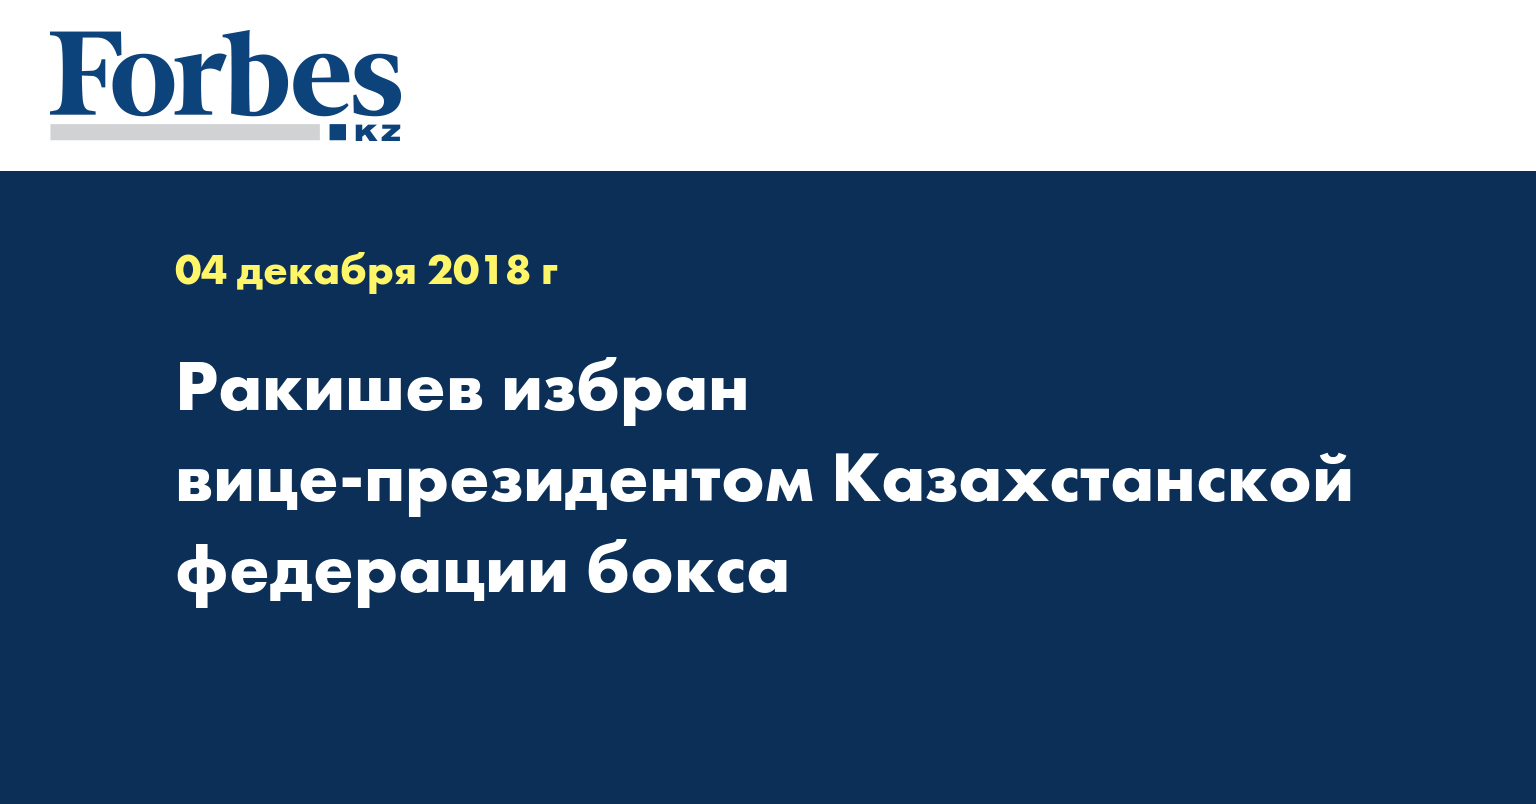 Ракишев избран вице-президентом Казахстанской федерации бокса